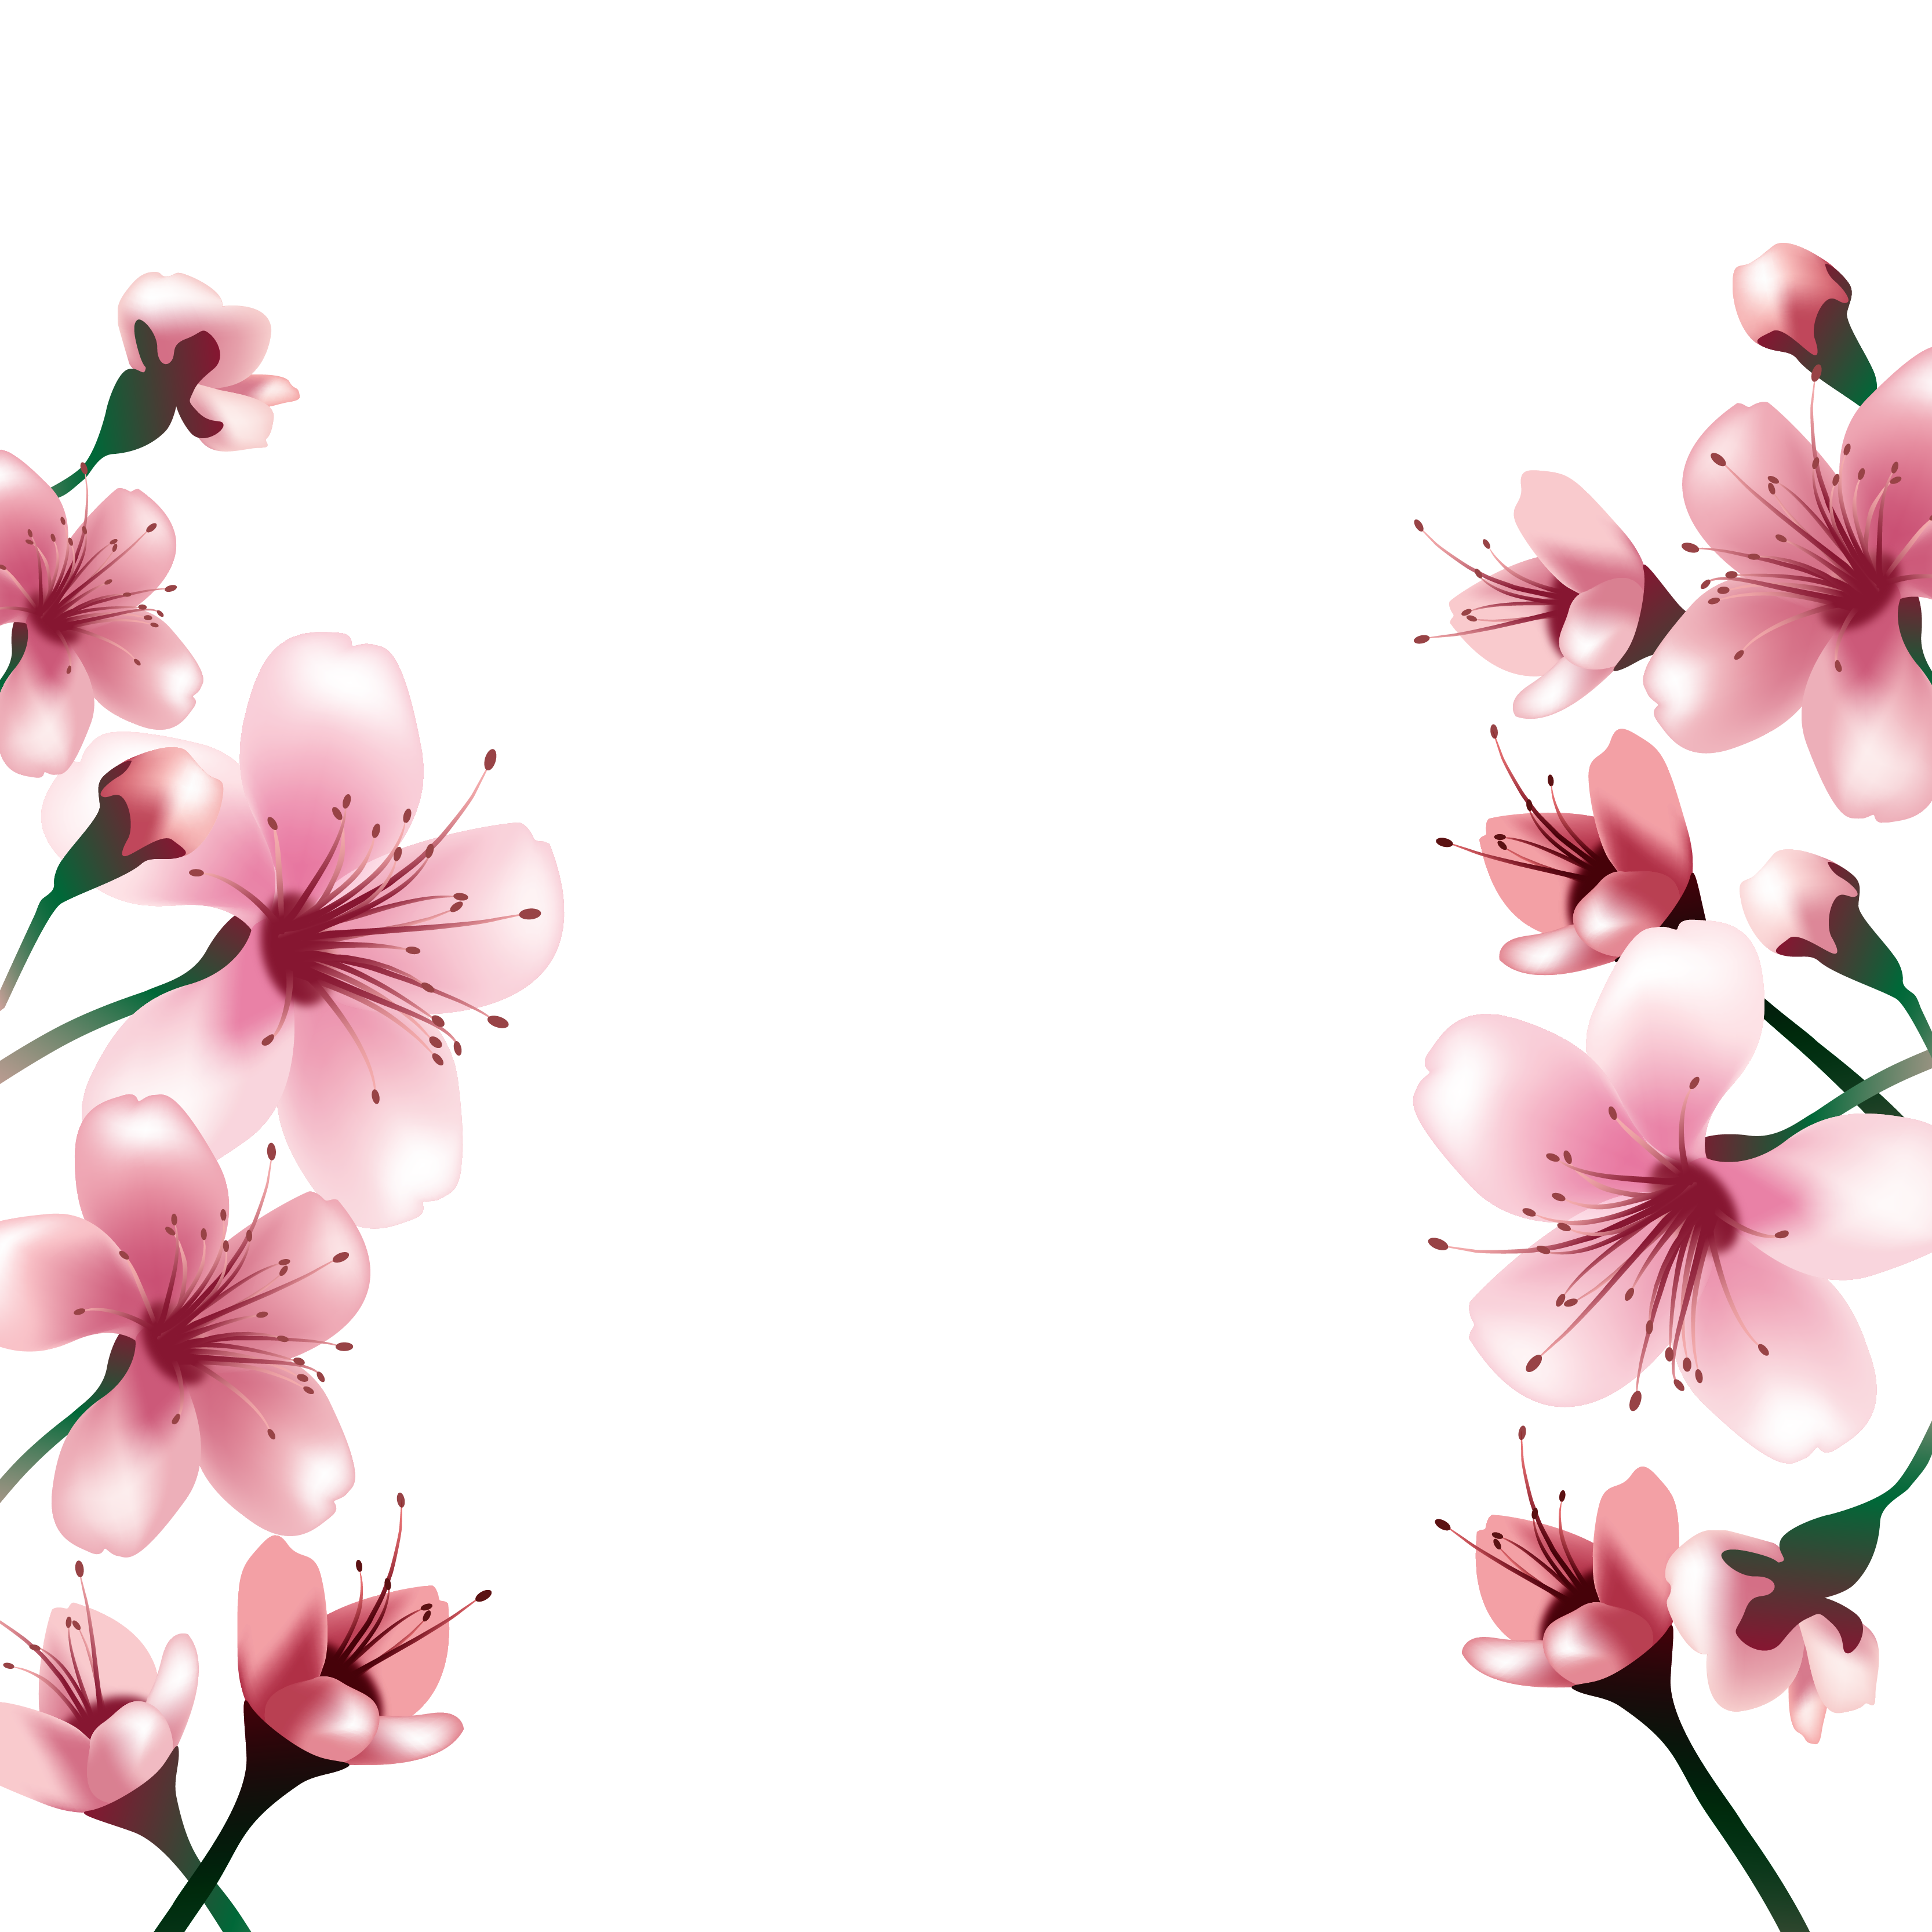 Những bông hoa anh đào hồng trong suốt đẹp tuyệt vời. Điểm nhấn hoàn hảo cho bất kì thiết kế nào. Bạn sẽ không muốn bỏ qua những hình ảnh này.